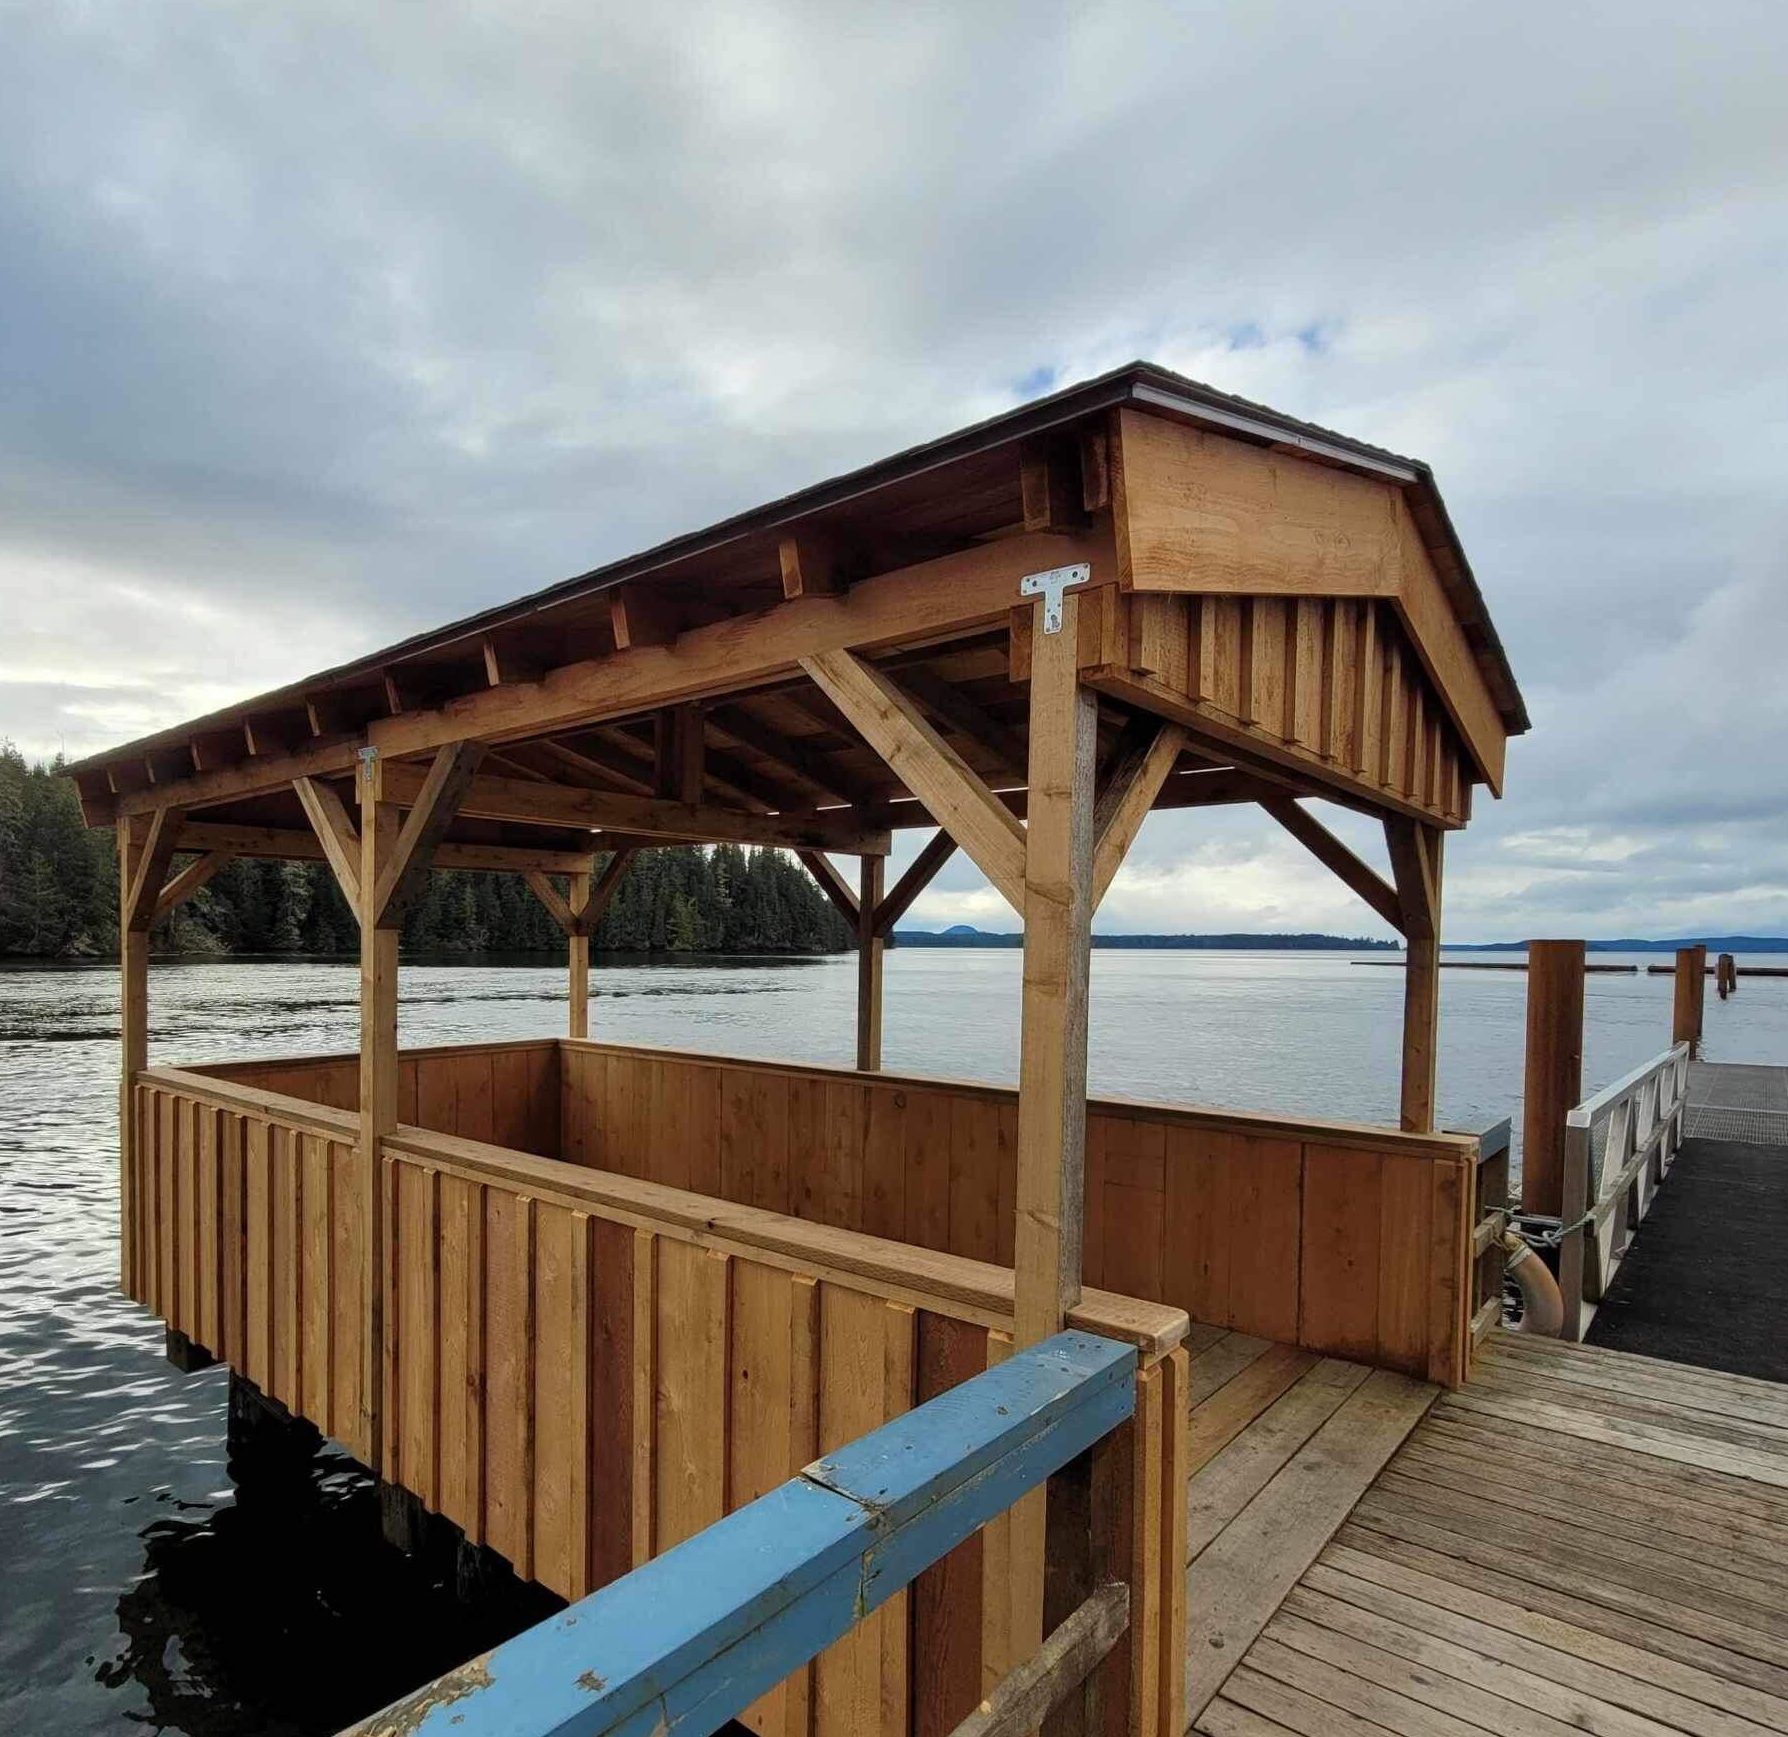 Cedar structure on dock